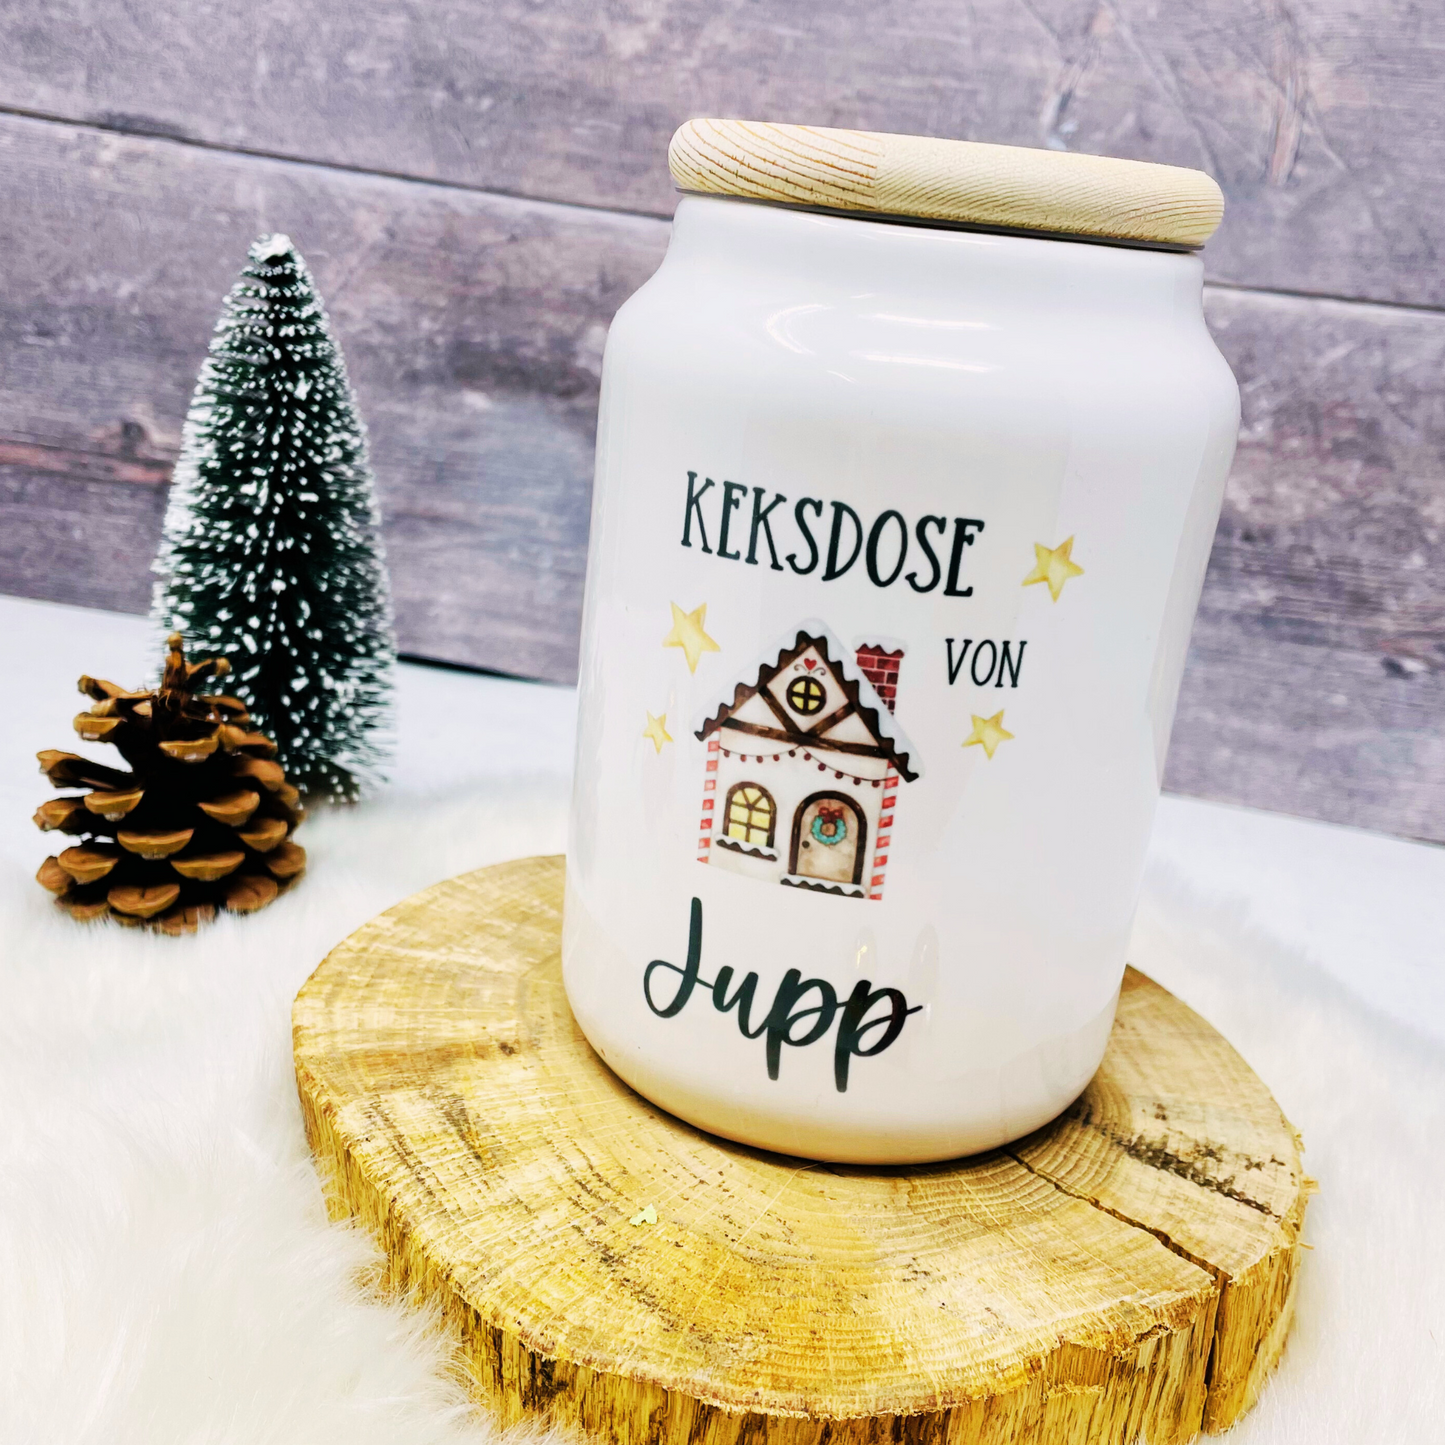 Keksdose personalisiert mit Namen, Geschenk Weihnachten, Mama, Oma, Plätzchendose, Vorratsdose Keramik mit Holzdeckel - Design Christmas